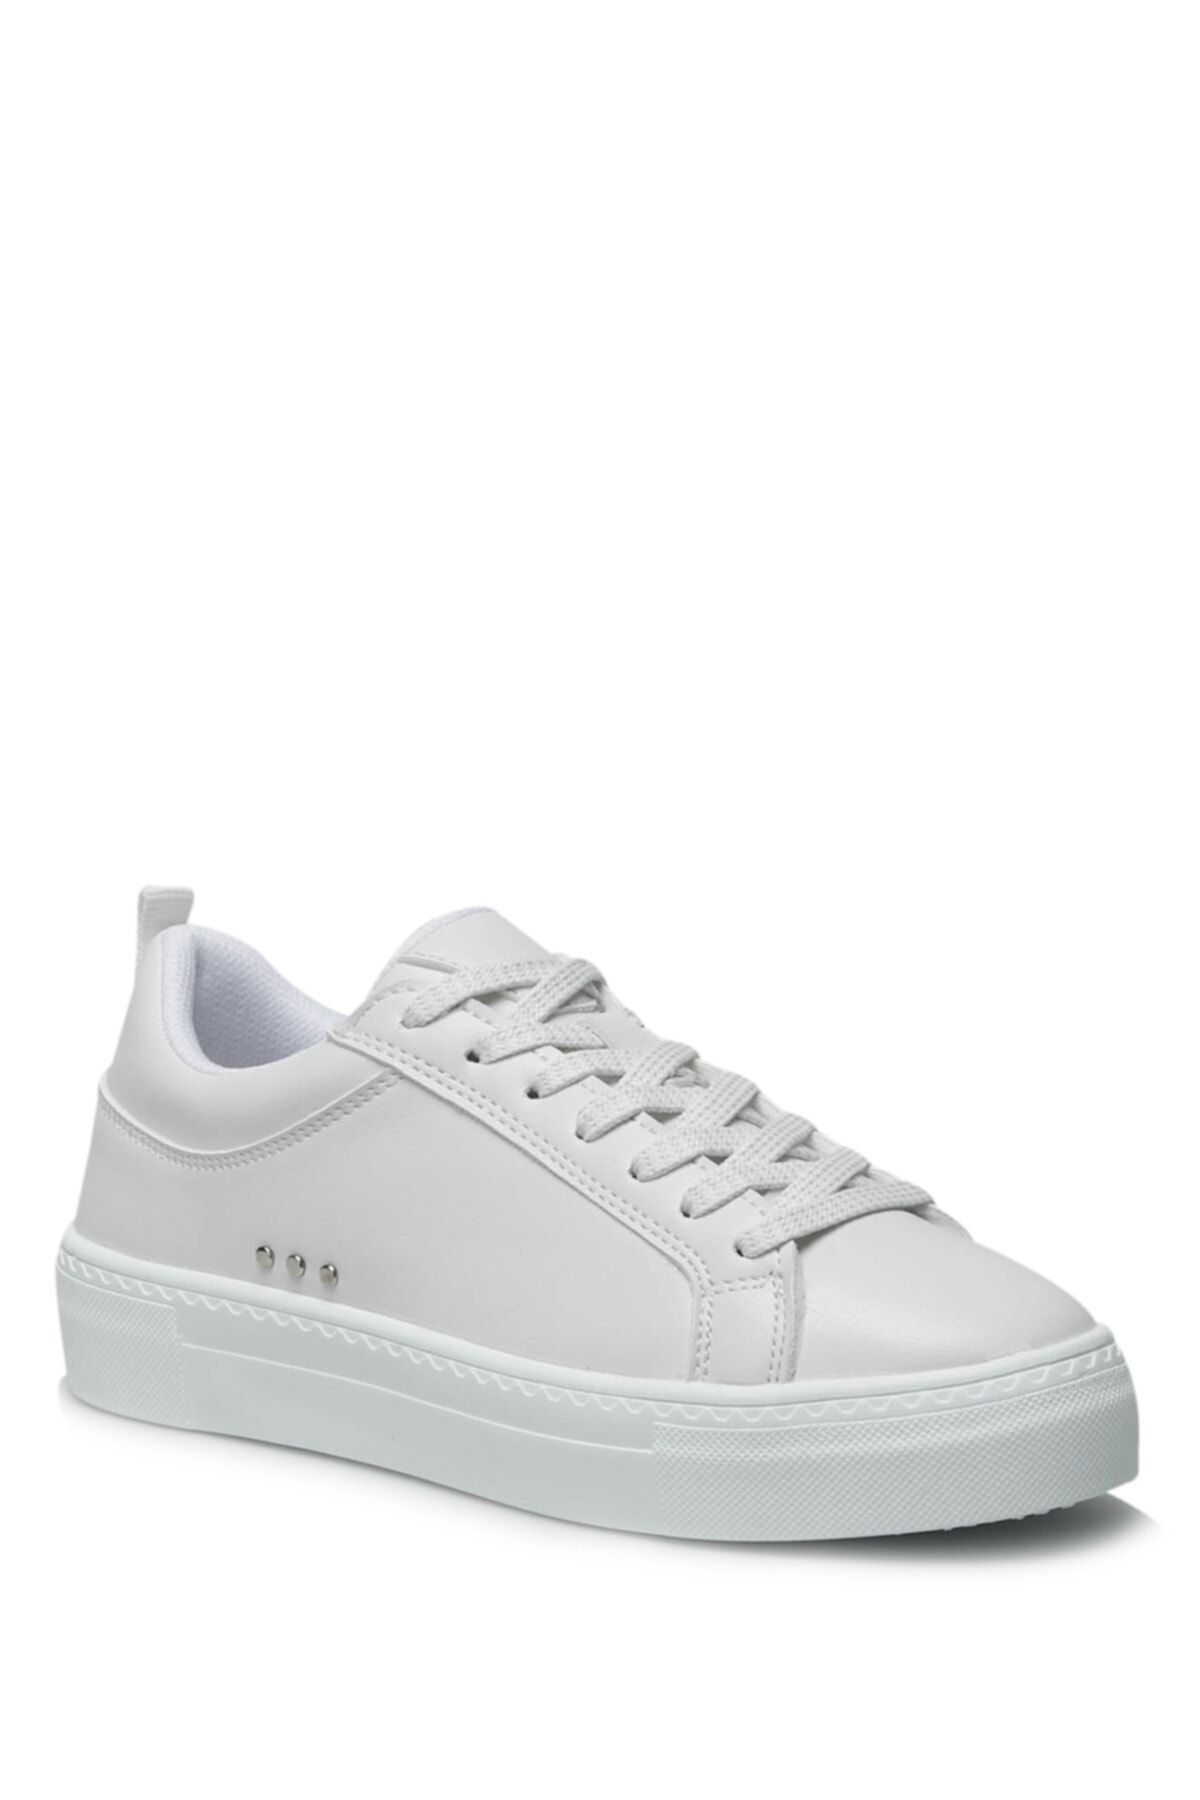 Polaris Beyaz - 319584.z 2fx Kadın Sneaker